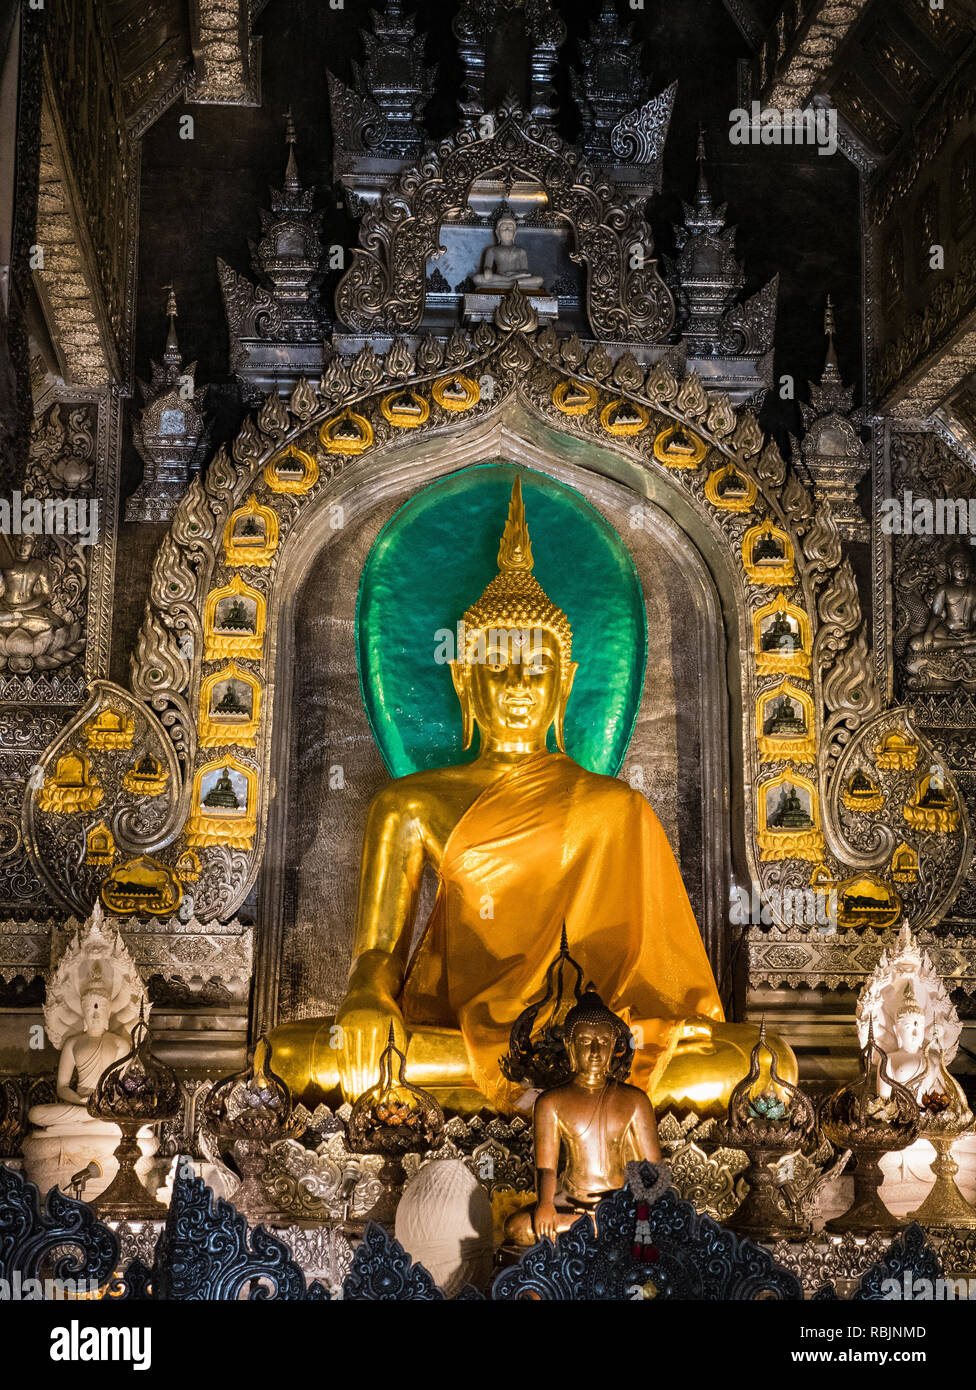 Bouddha en or à l'intérieur du temple d'argent de Chiang Mai, Thaïlande Banque D'Images